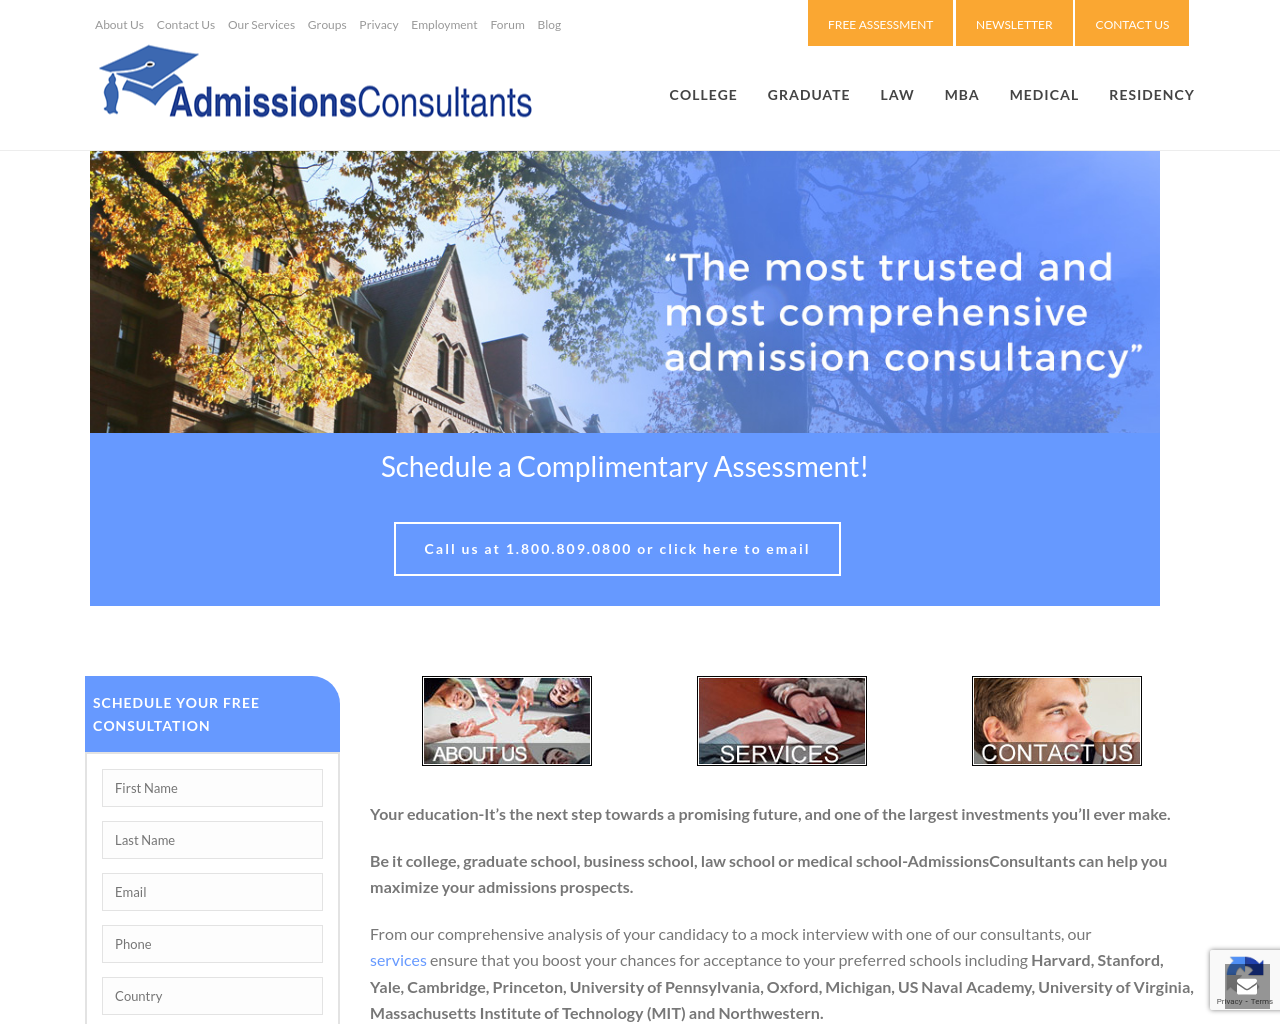 admissionsconsultants.com